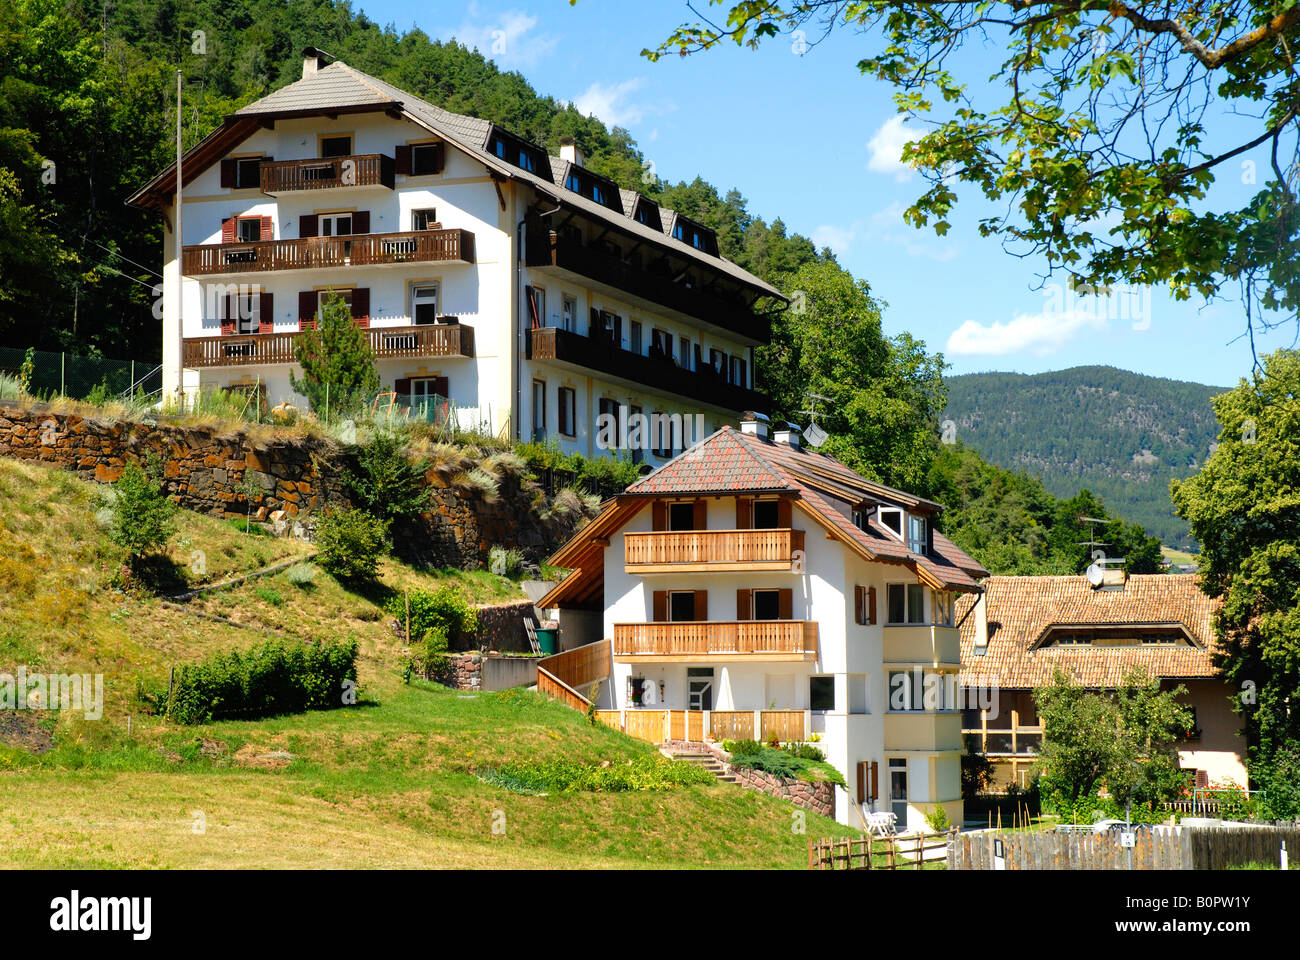 Chalets sull'altopiano del Renon vicino a Bolzano in Alto Adige Italia Foto Stock